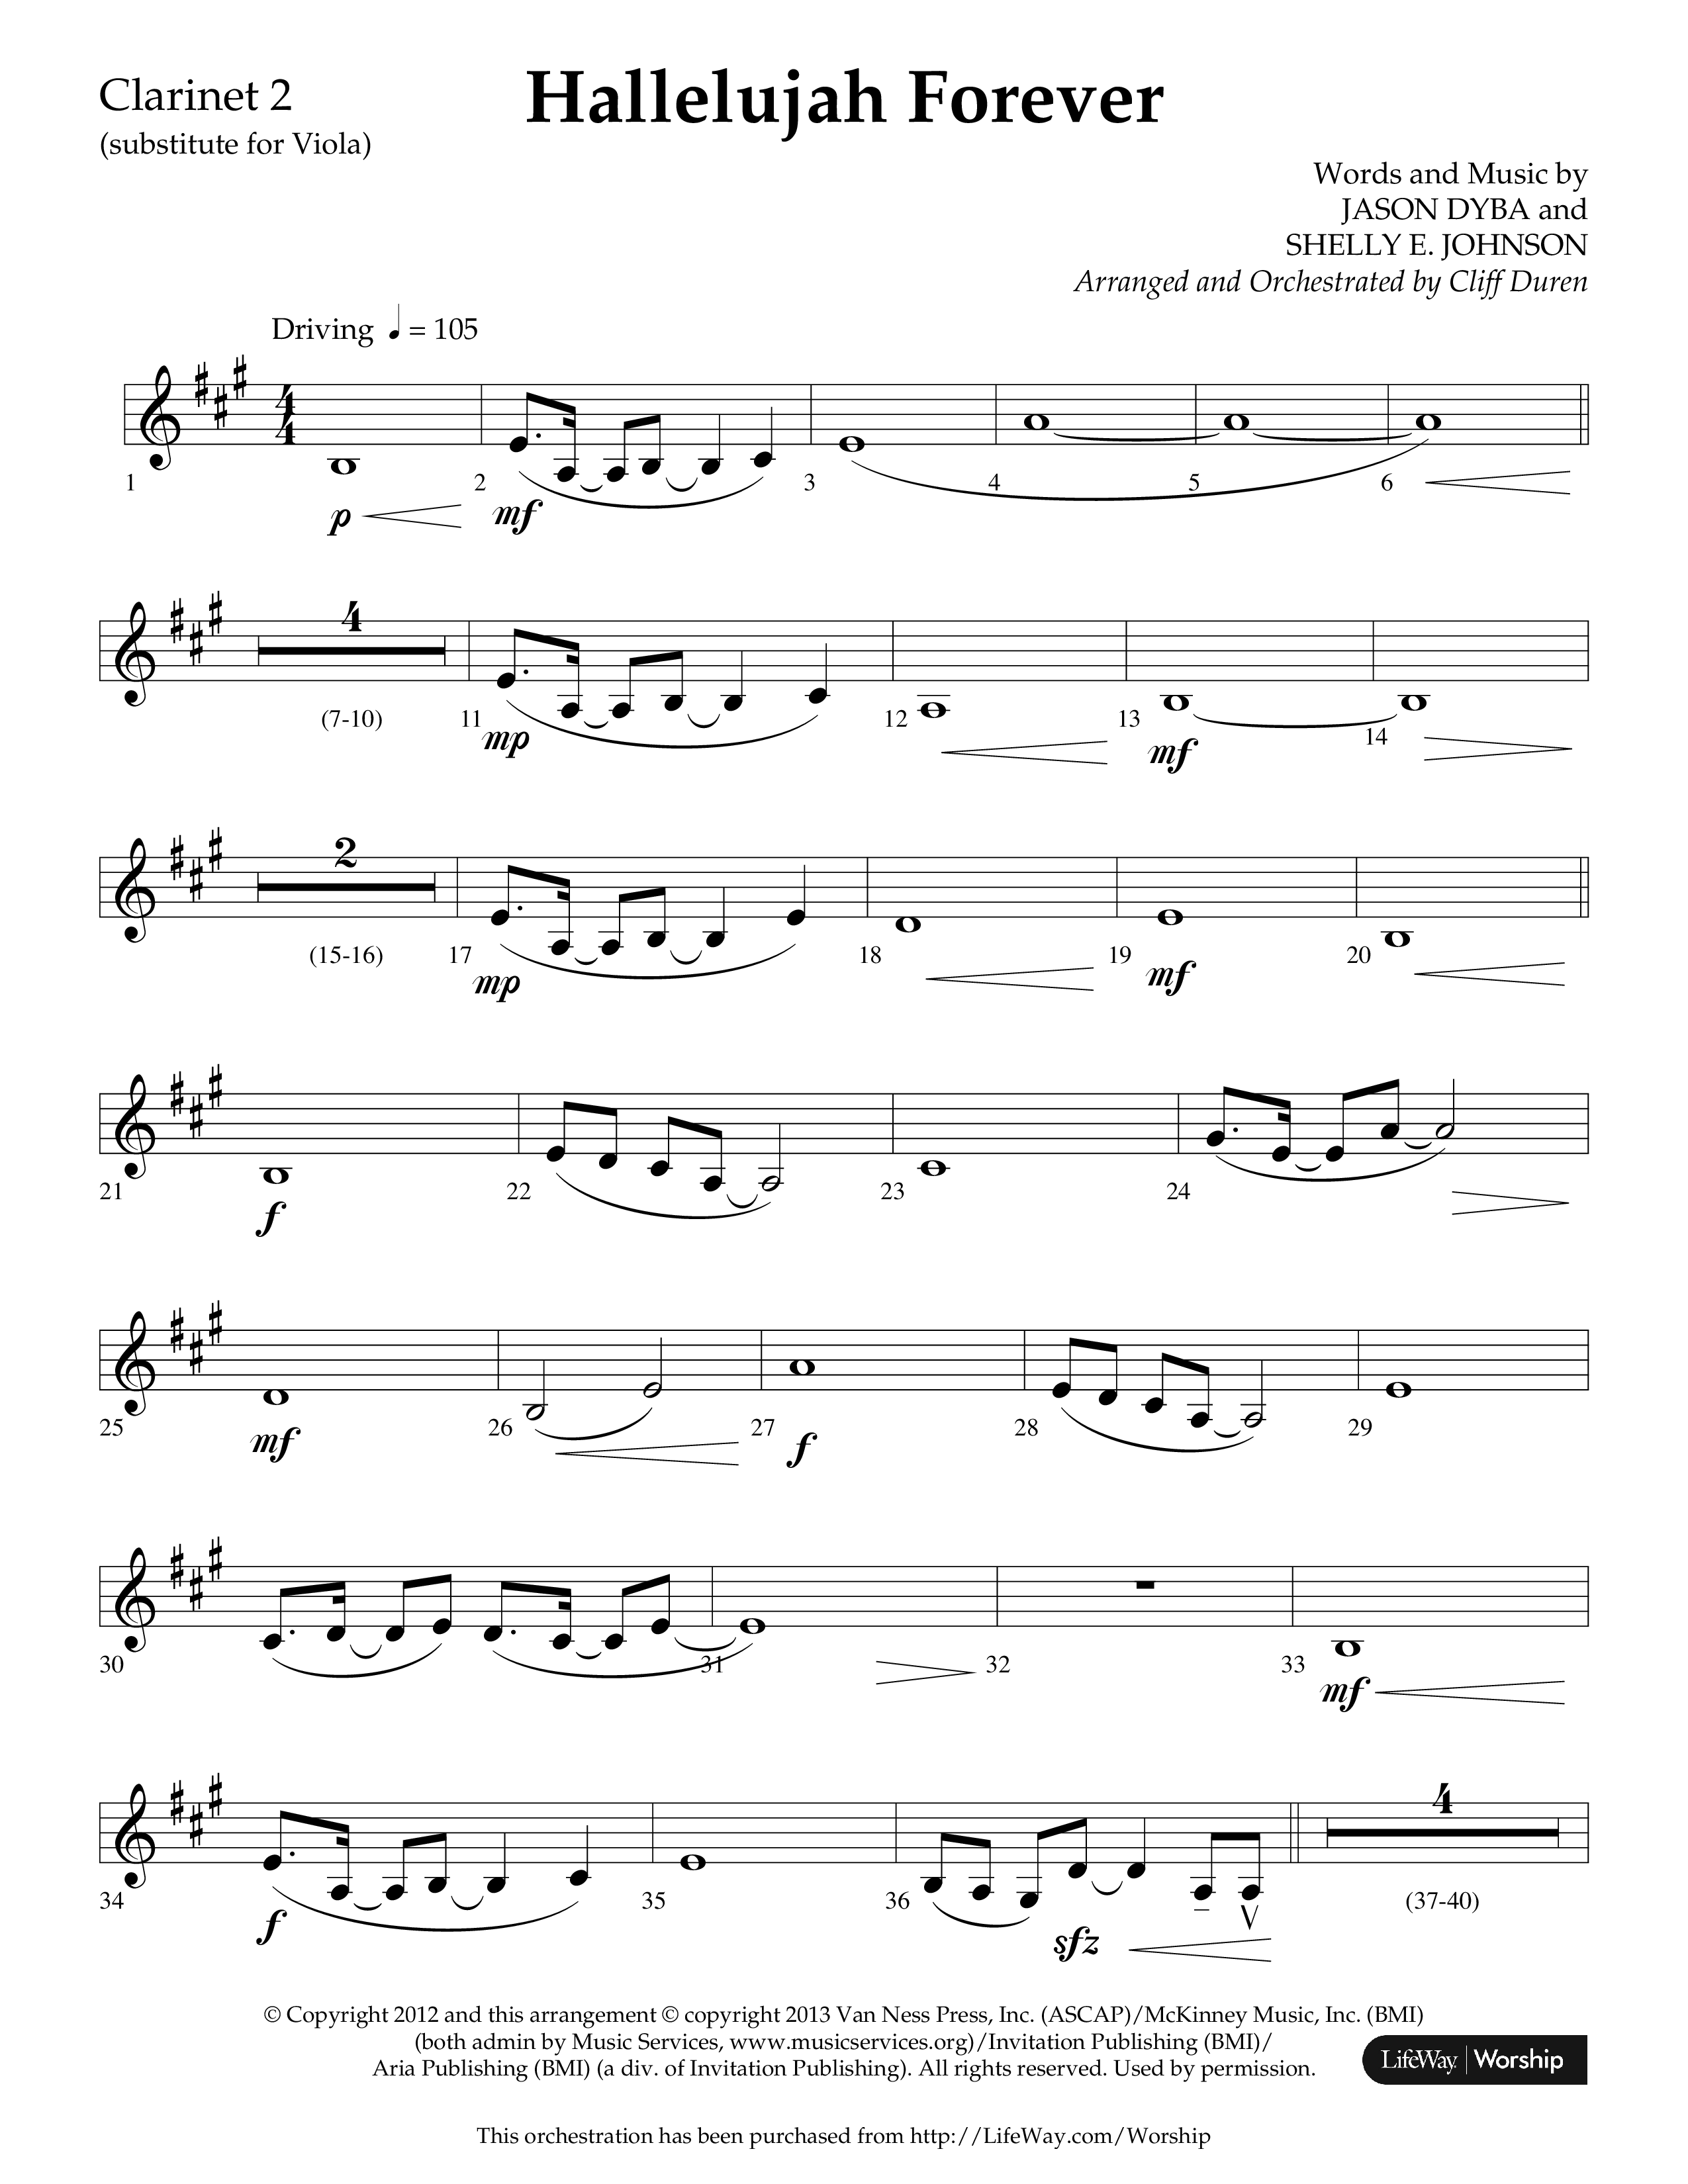 Hallelujah Forever (Choral Anthem SATB) Clarinet 1/2 (Lifeway Choral / Arr. Cliff Duren)